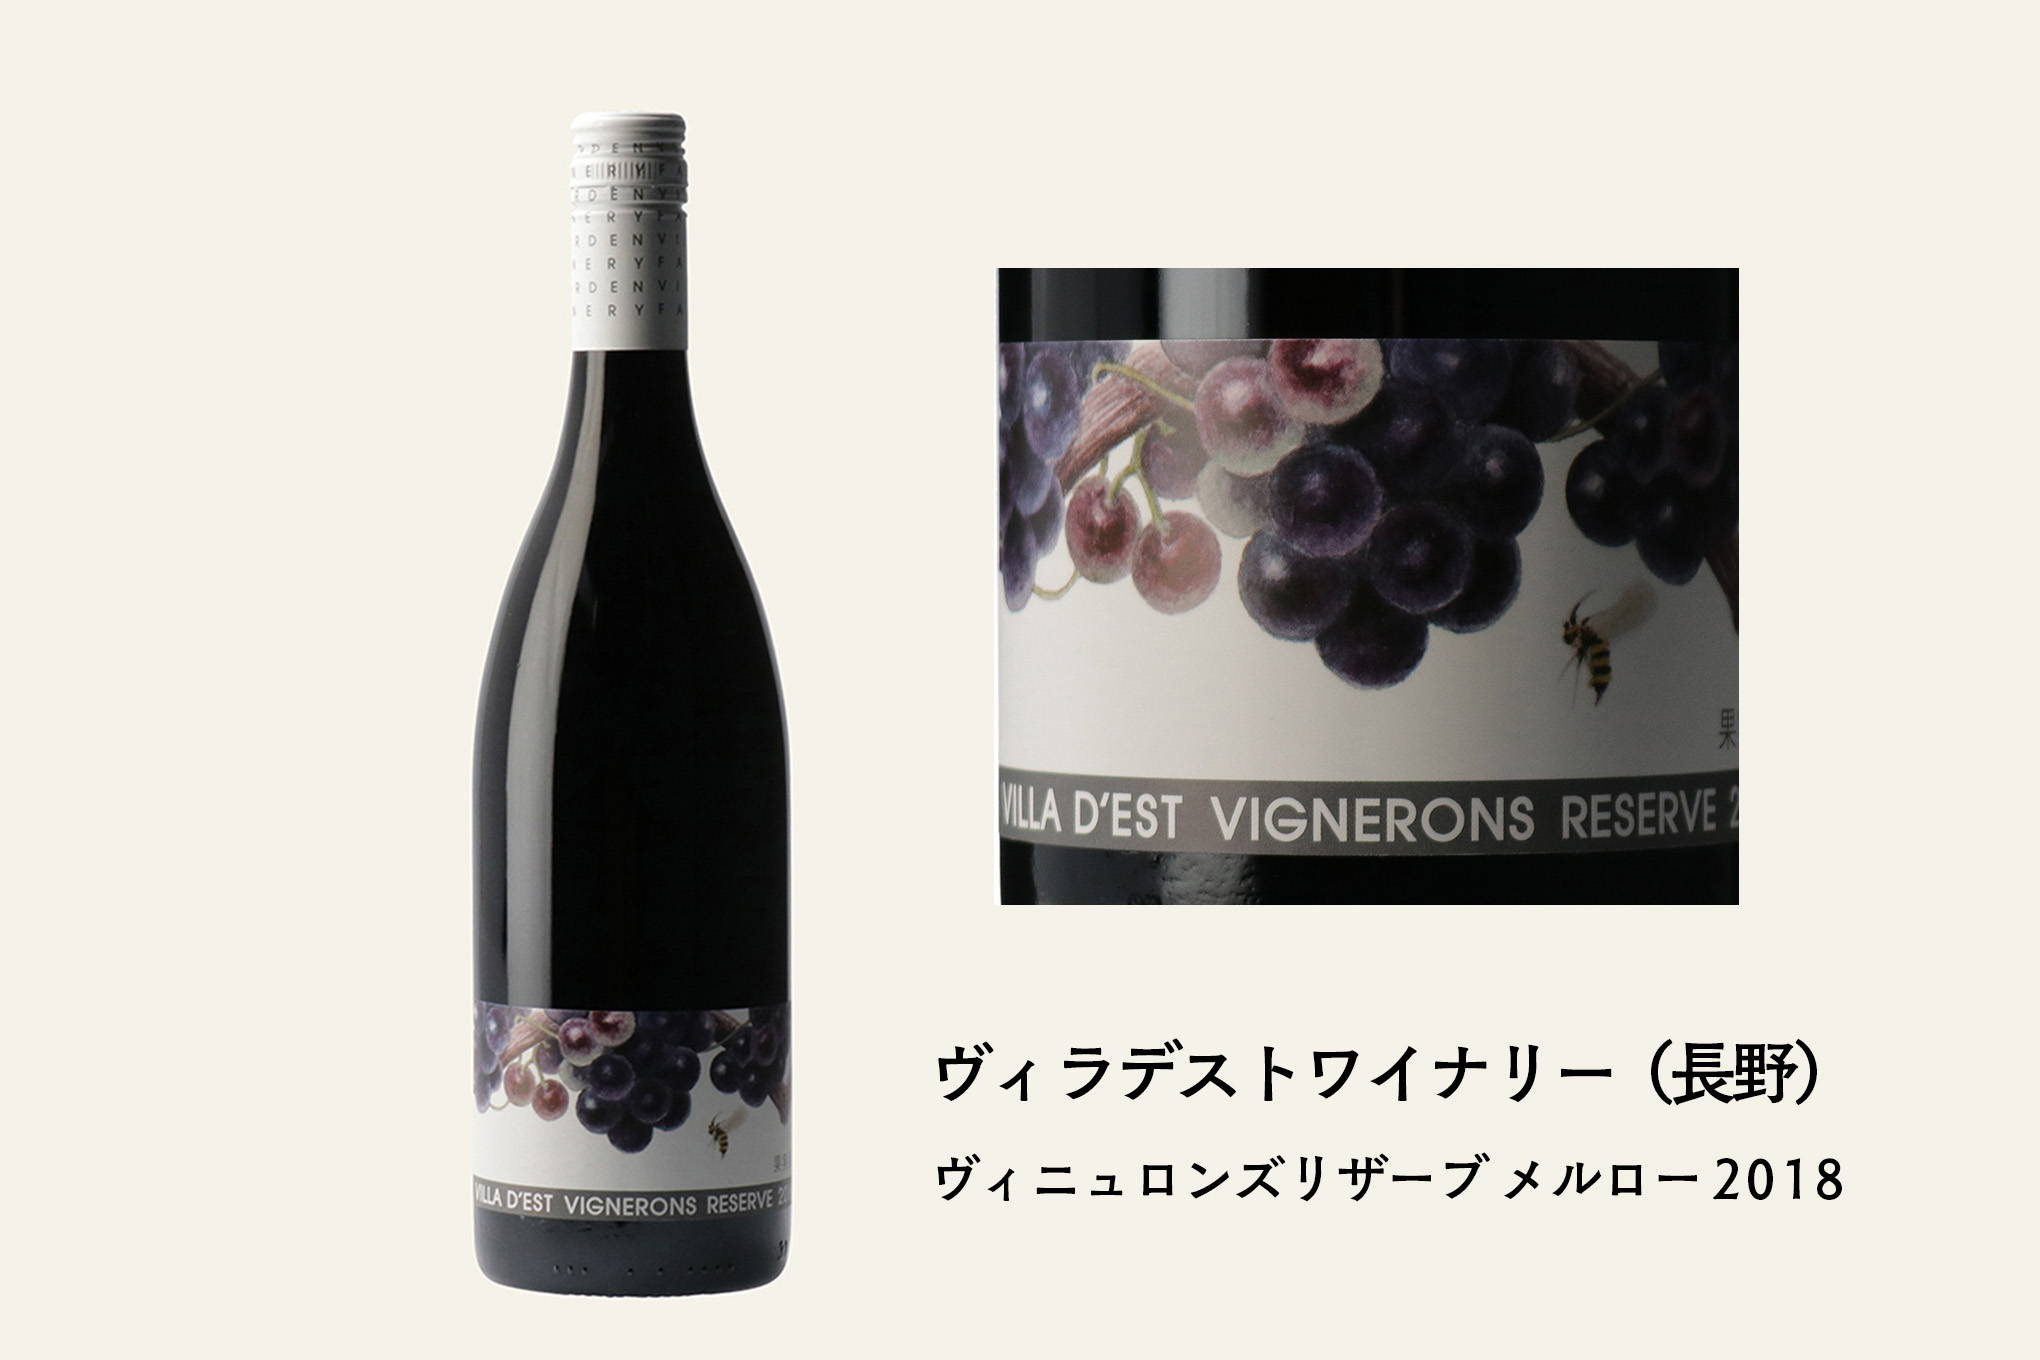 佐久間さんおすすめ③　日本のメルローの先入観を覆す、背筋の伸びるような完成度の赤ワイン『ヴィニュロンズリザーブ メルロー 2018』。